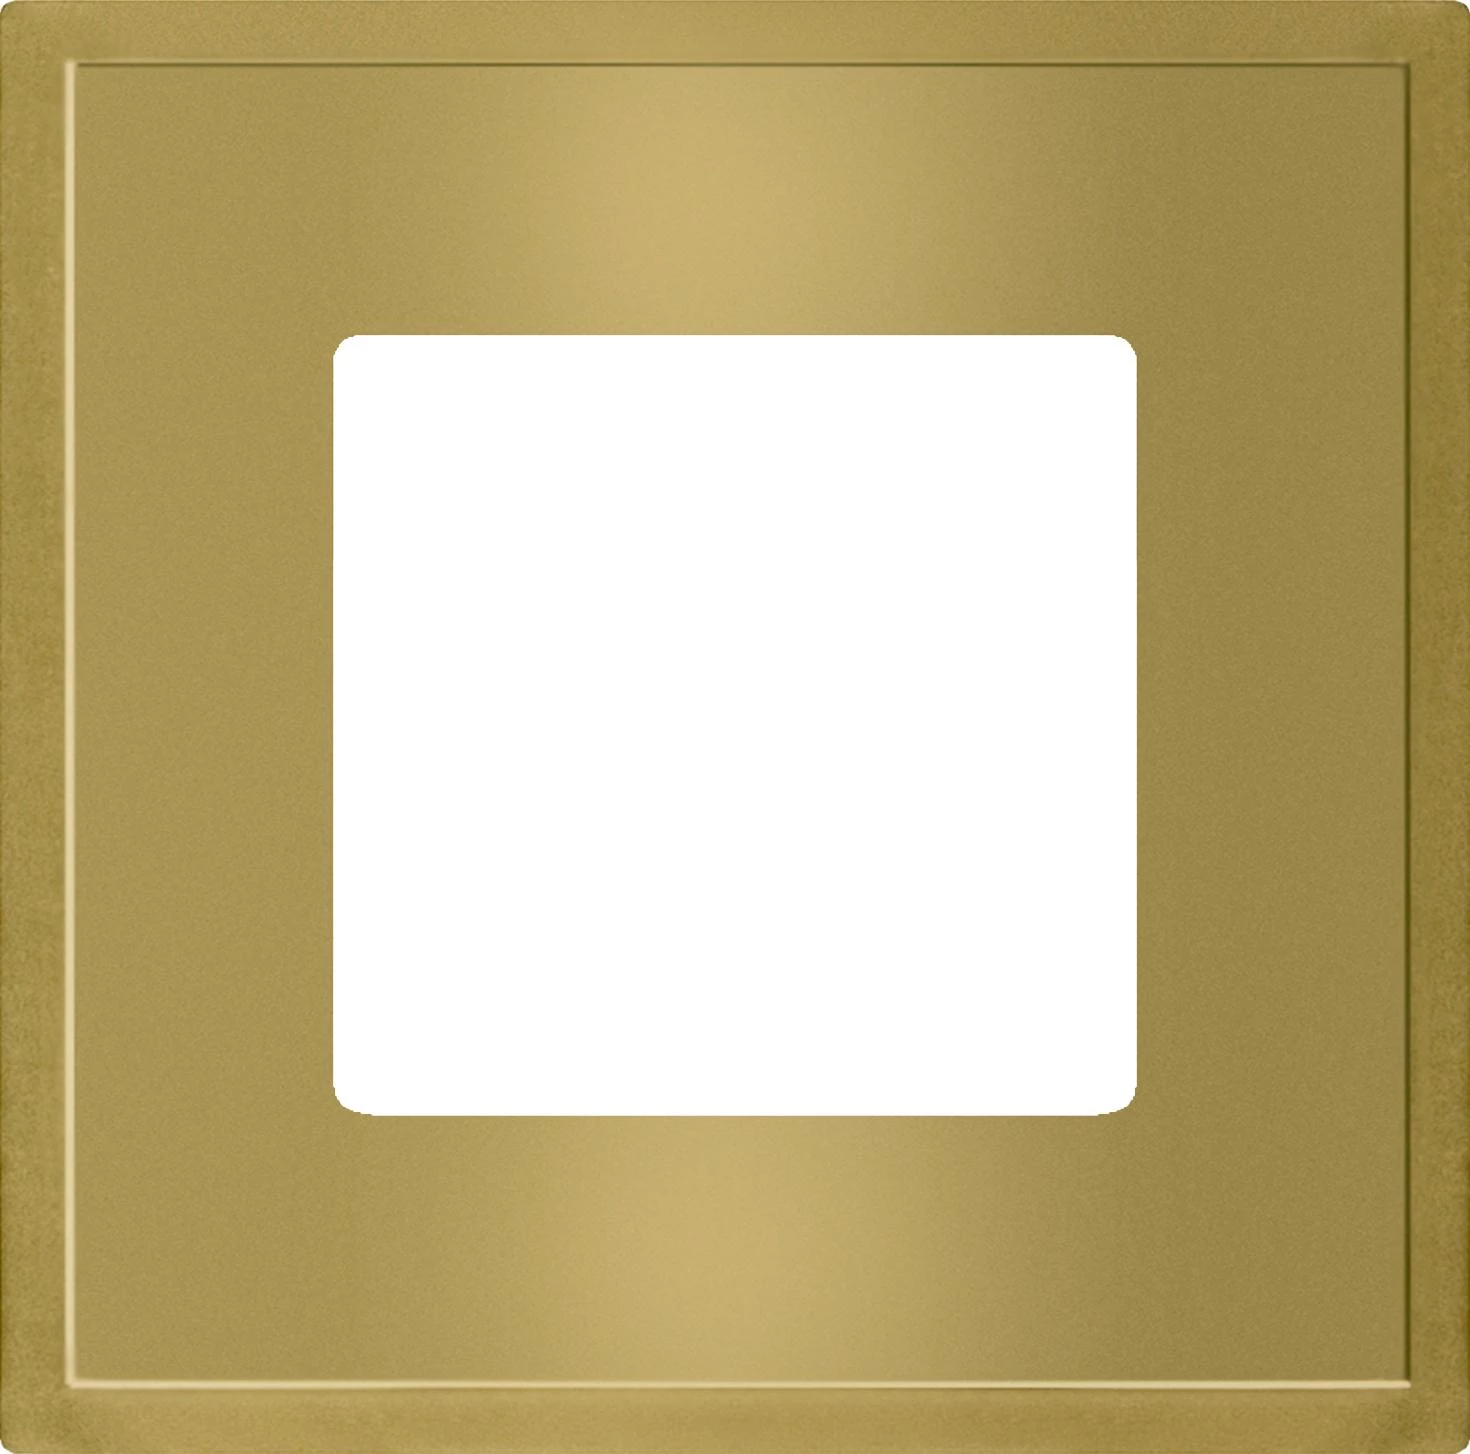  артикул FD01241OB название Рамка 1-ая (одинарная), цвет Светлое золото, Madrid, Fede